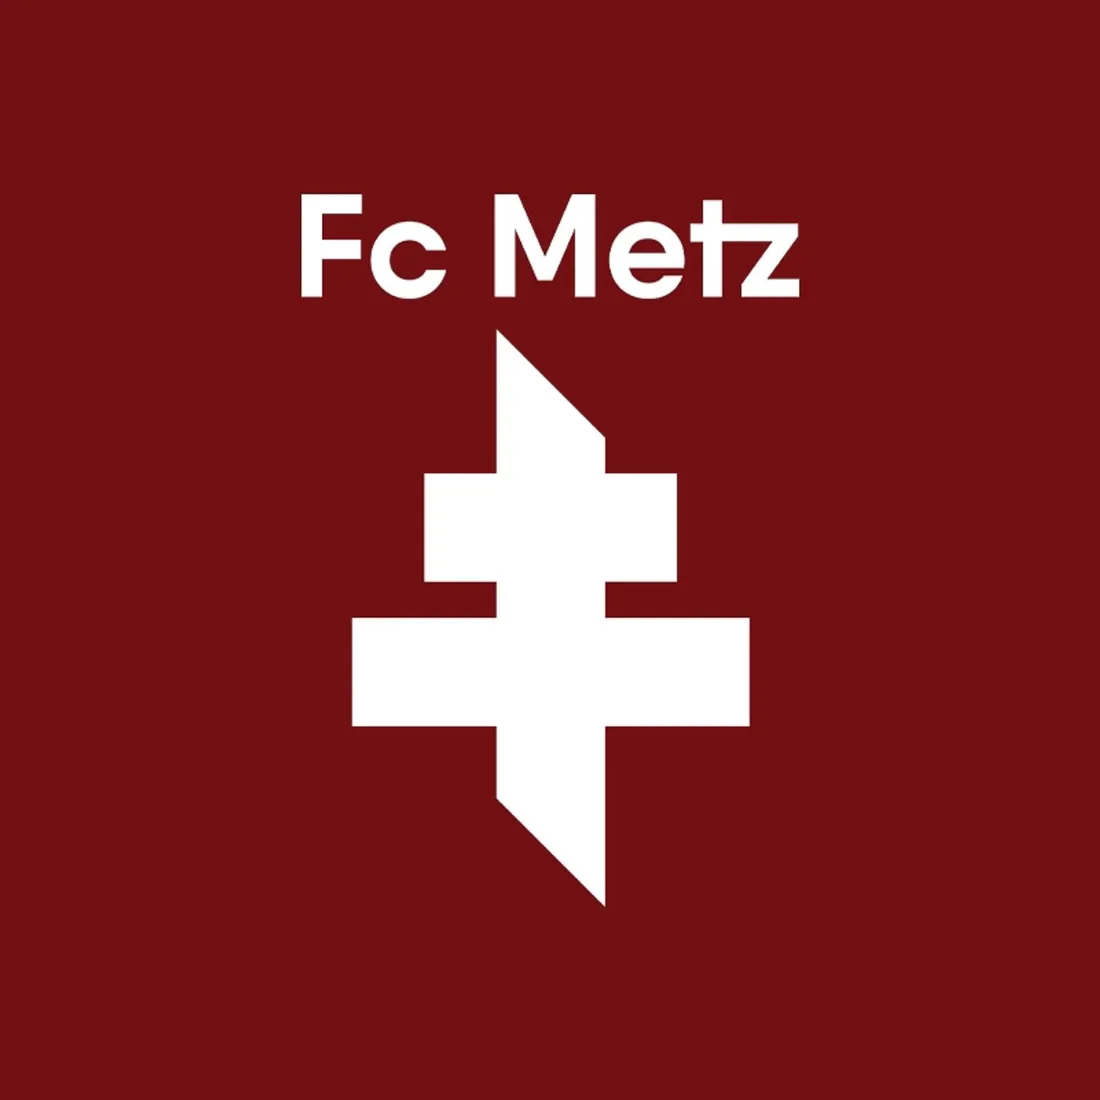 Le nouveau logo du FC Metz